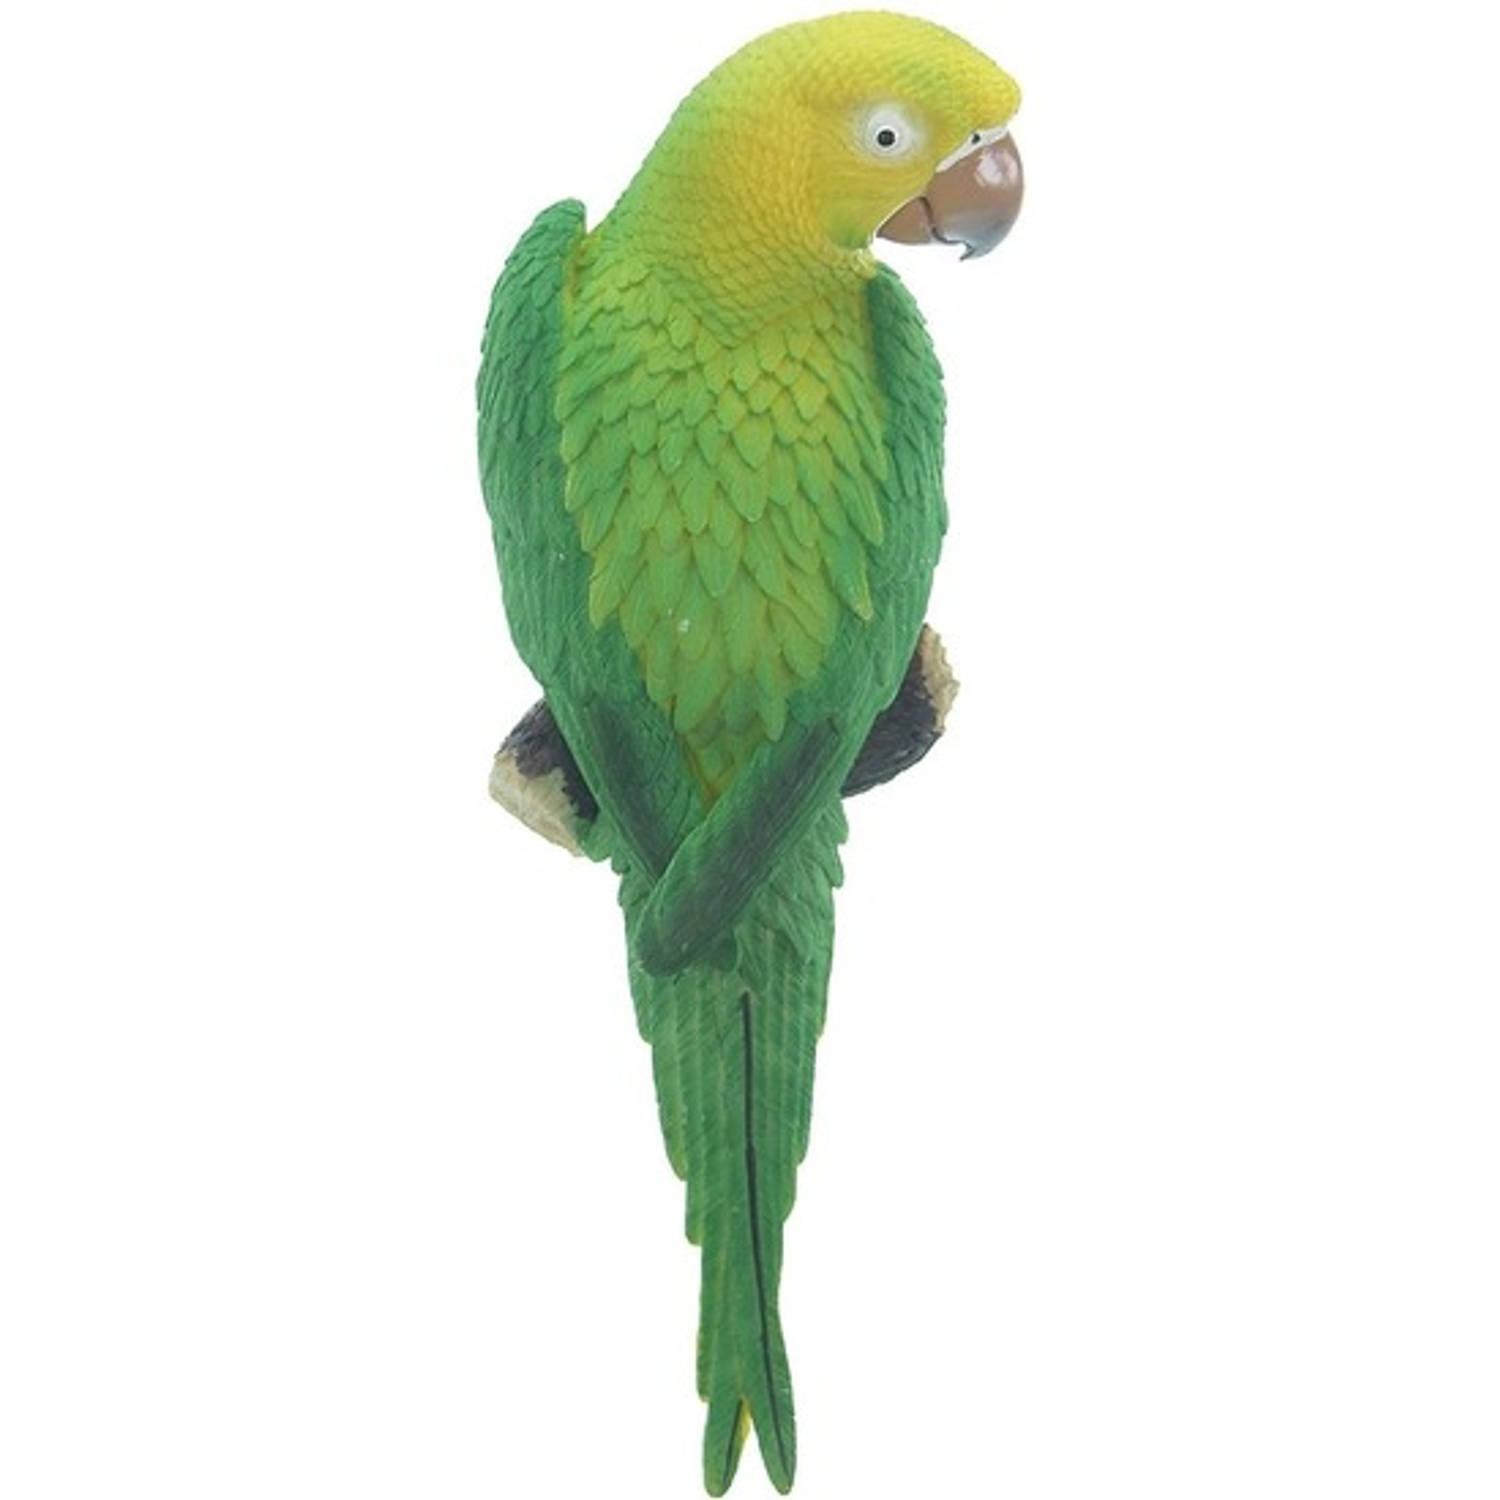 Dierenbeeld Groen-gele Ara Papegaai Vogel 31 Cm Tuinbeeld Hangdecoratie Tuindecoraties Dierenbeelden